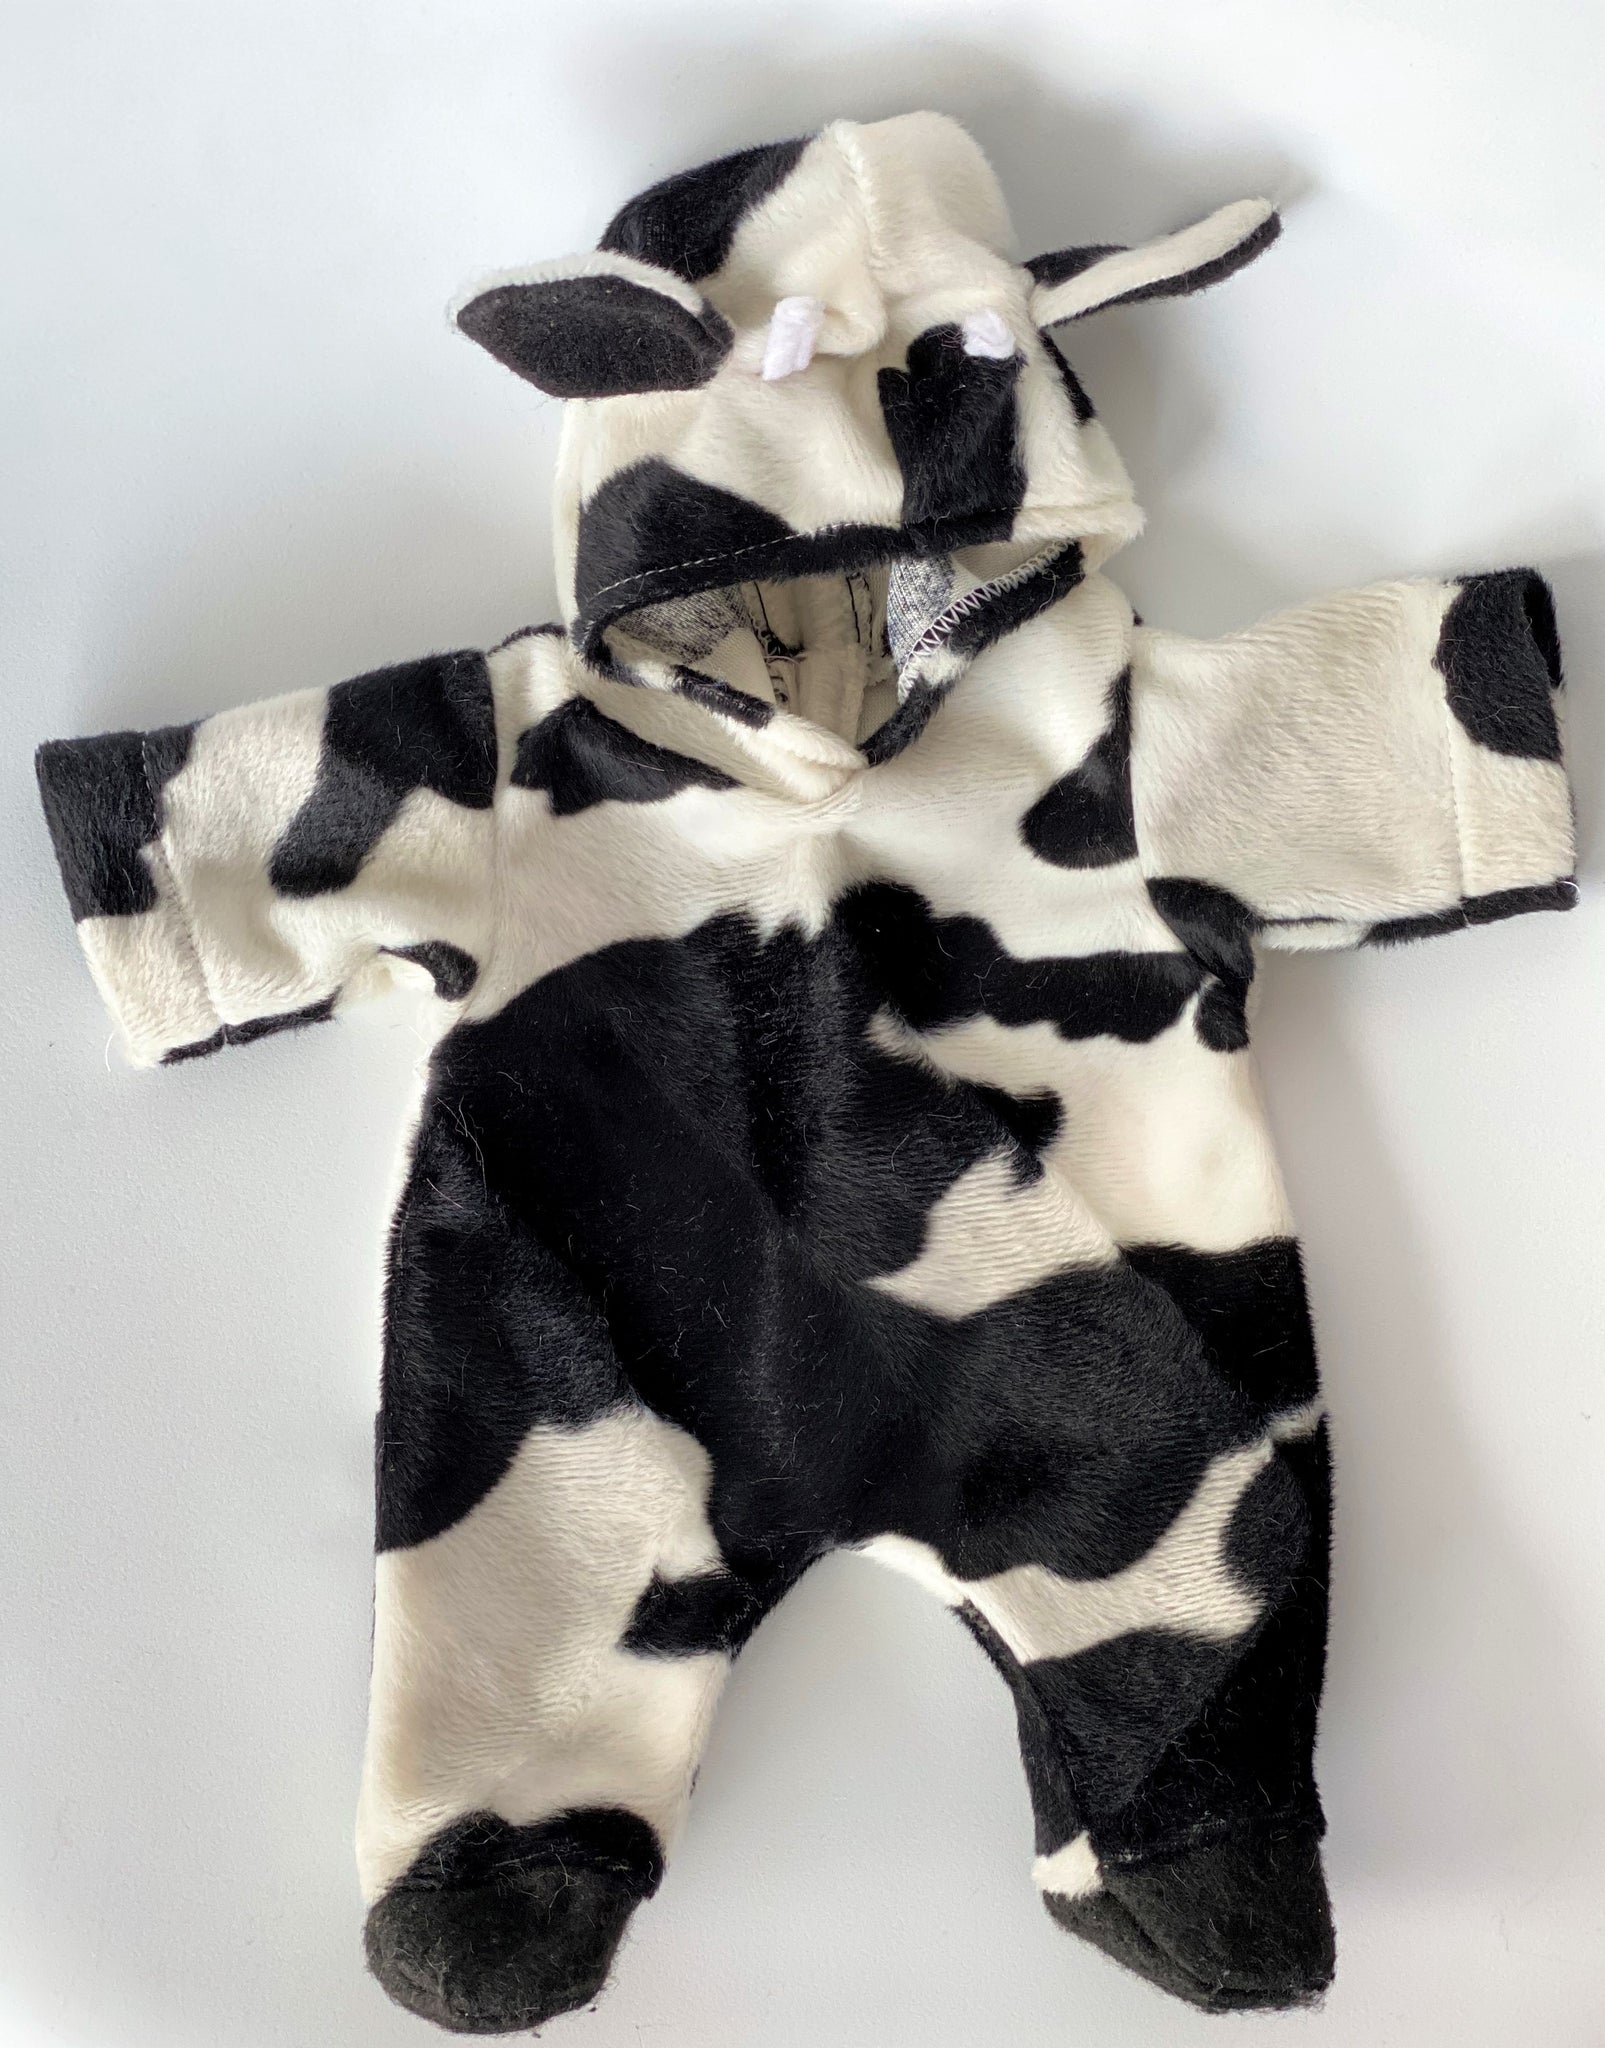 disfraz de vaca bebe – Compra disfraz de vaca bebe con envío